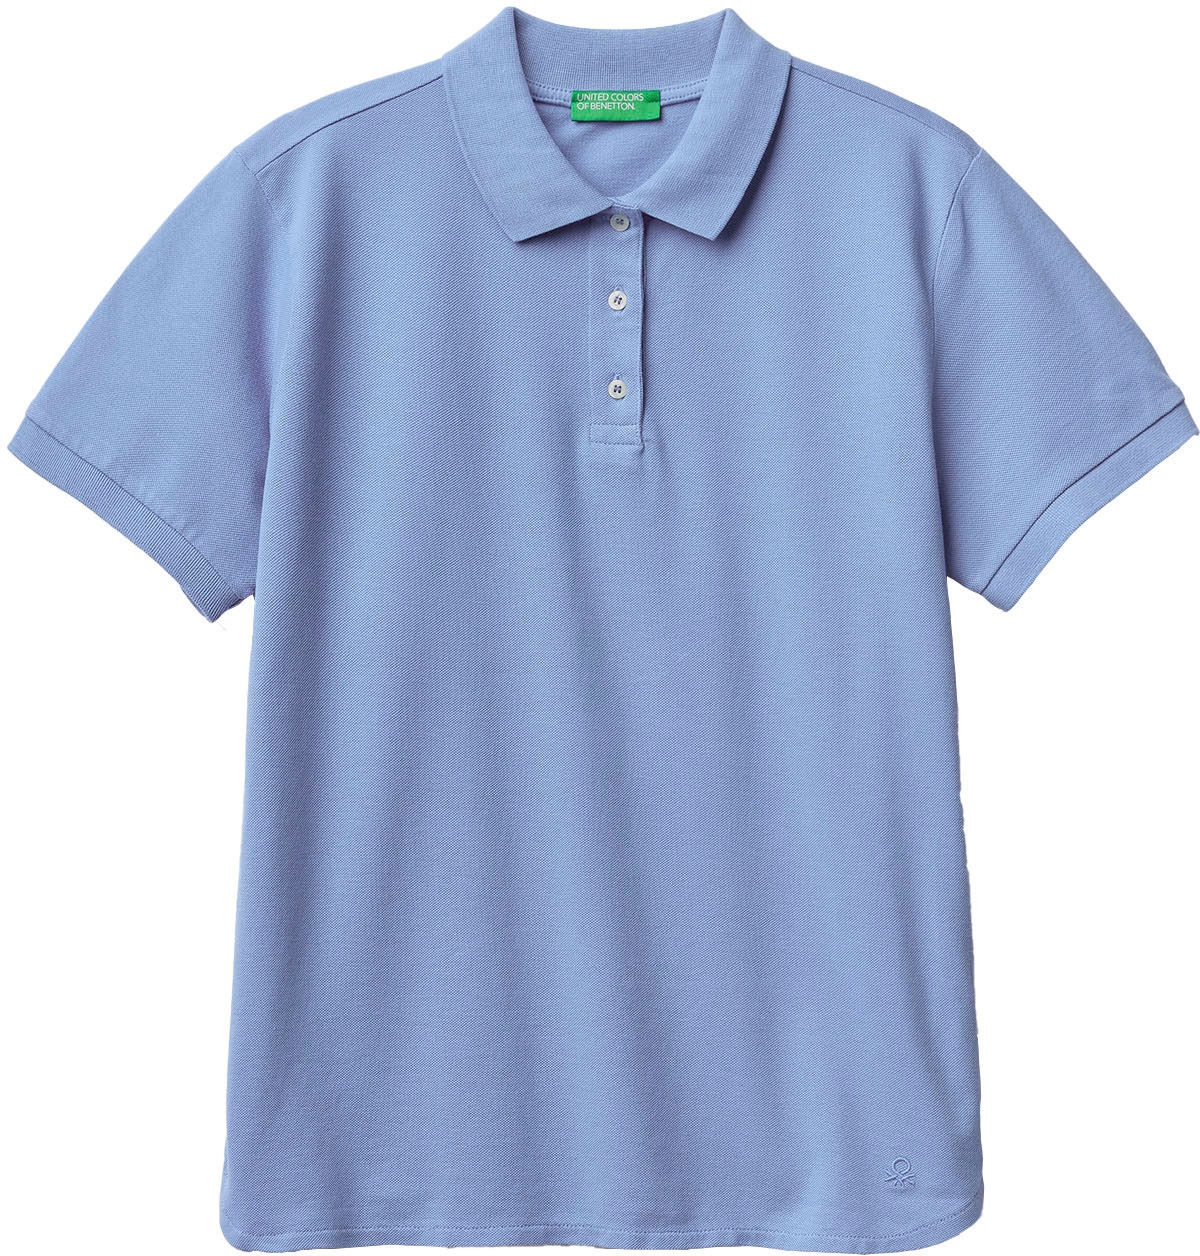 mit bei perlmuttfarbenen OTTO Poloshirt, United online of Colors Benetton kaufen Knöpfen